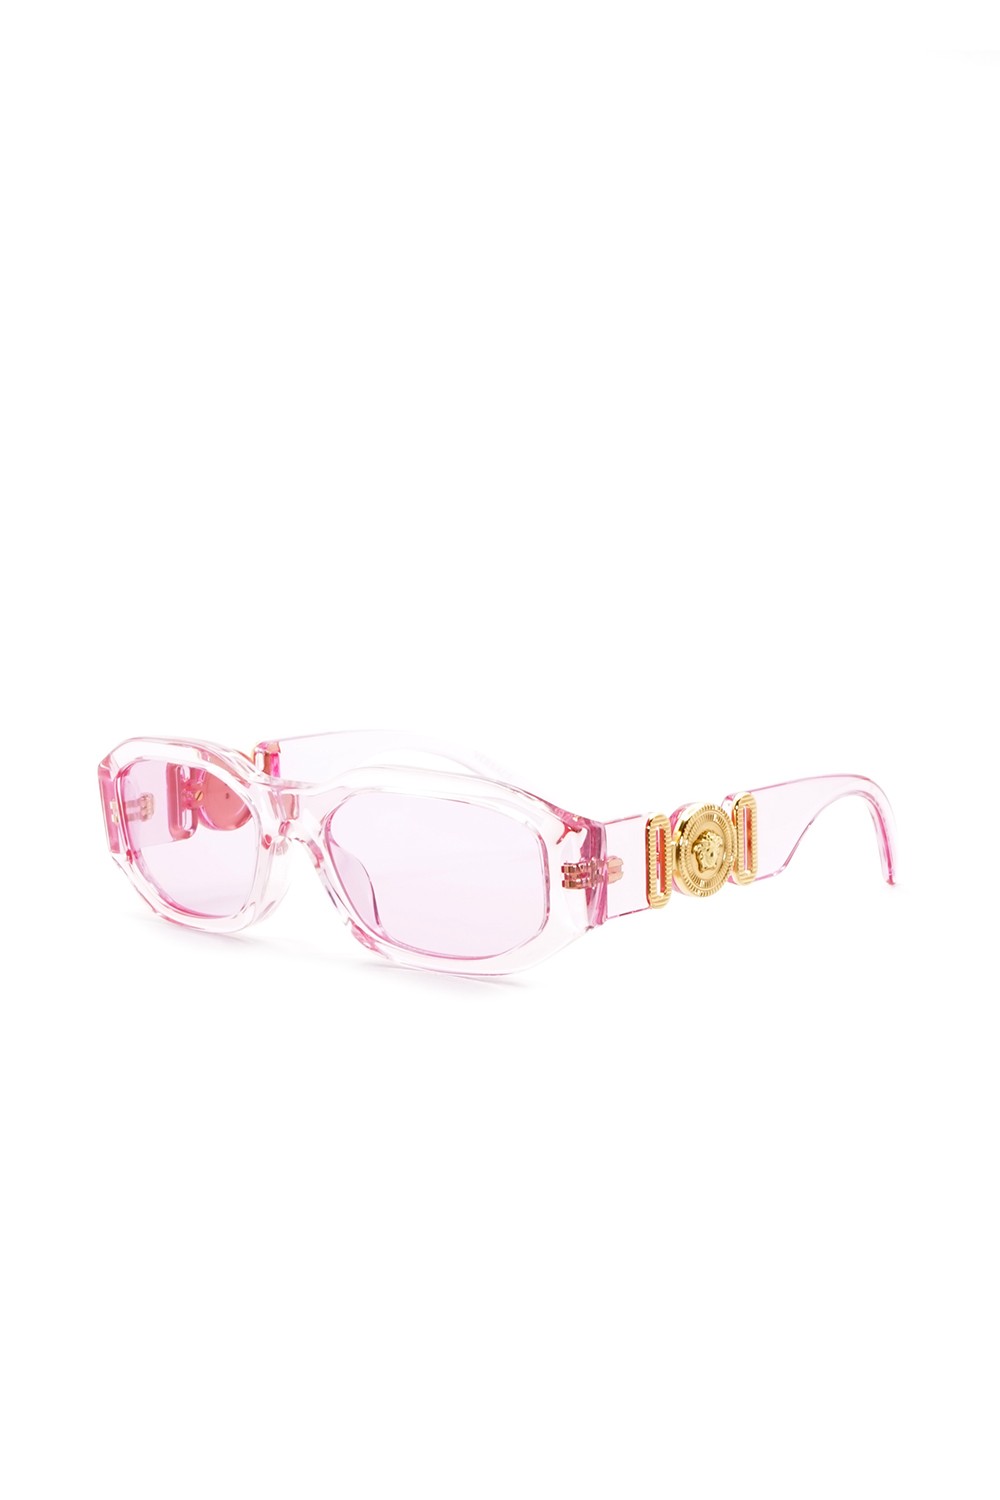 Versace - Occhiali da sole in celluloide rettangolari per bambini rosa -